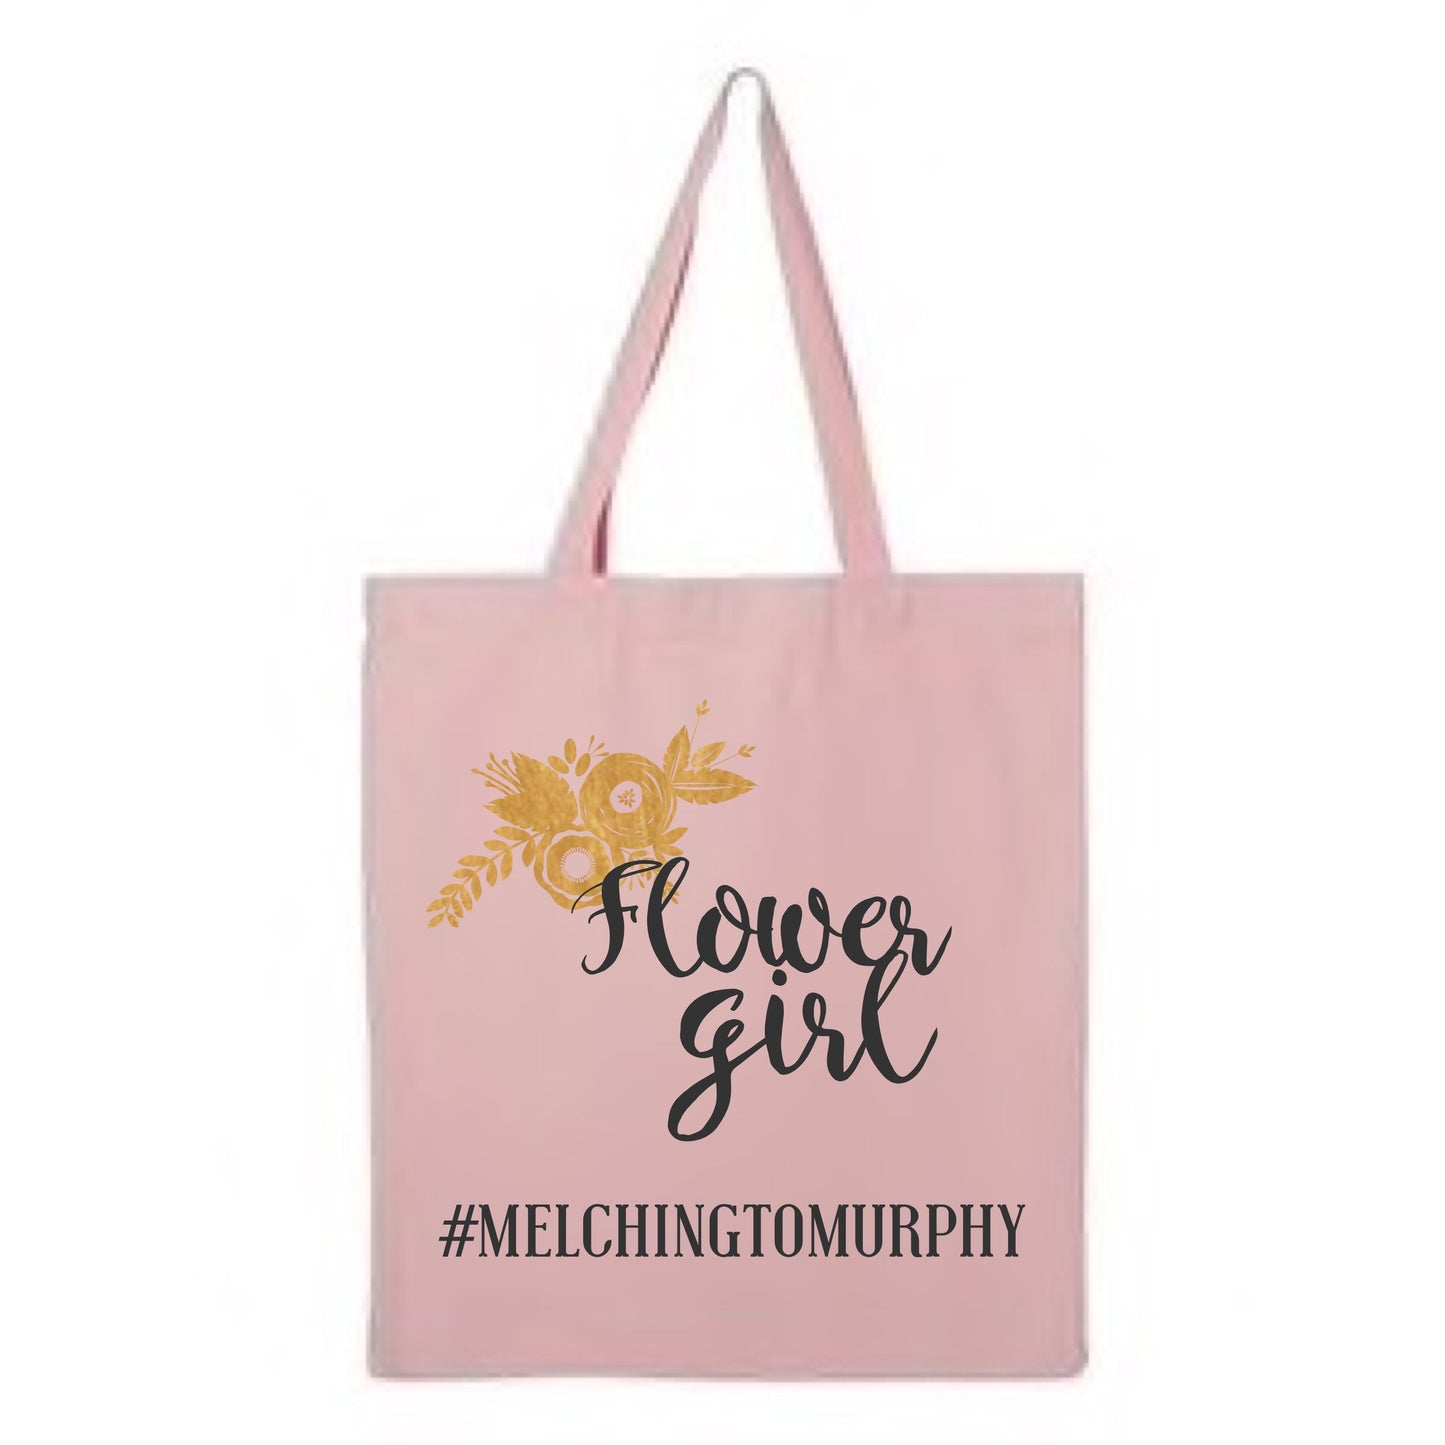 Flower girl tote| flower girl bag| Flower girl bag| cute bag for flower girl| flower girl gift| reusable tote| tote bag| custom bag